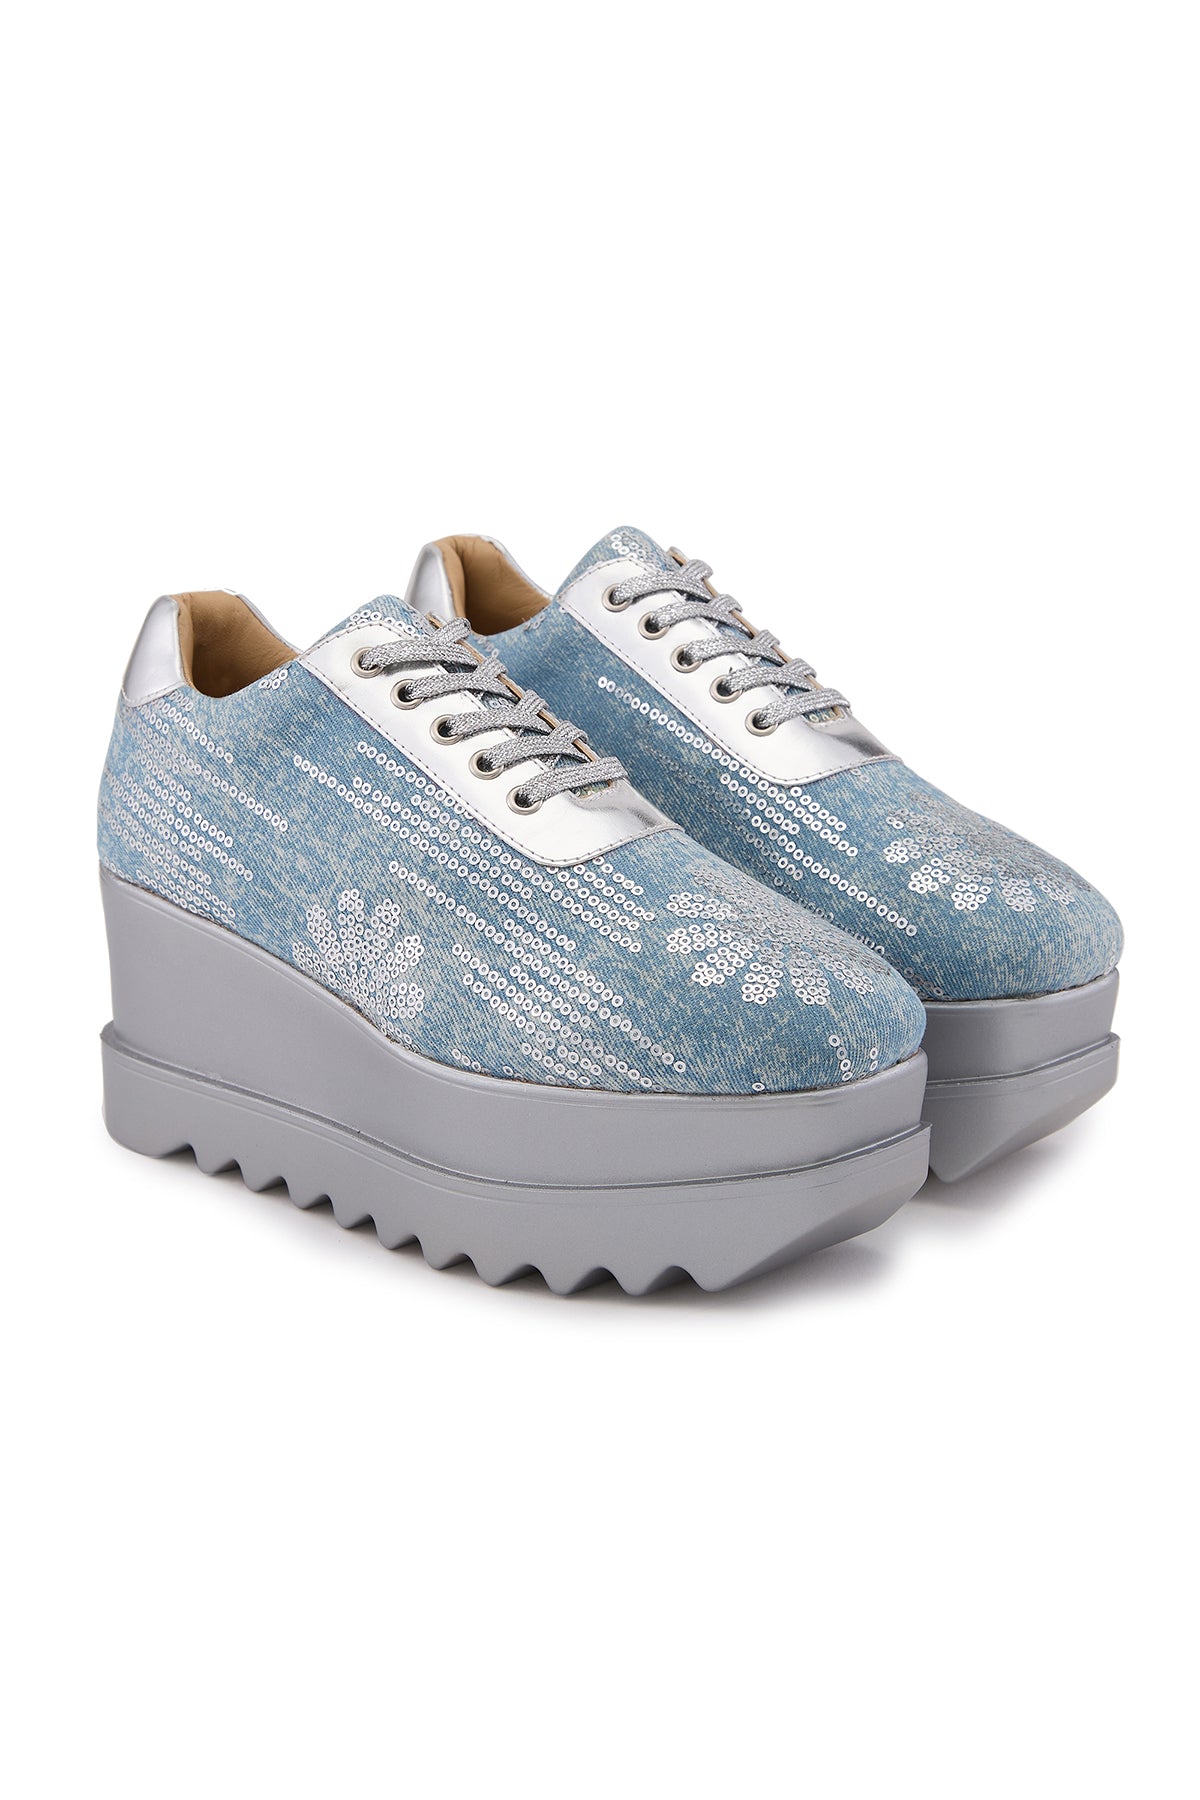 Blue Moon Wedge Sneakers